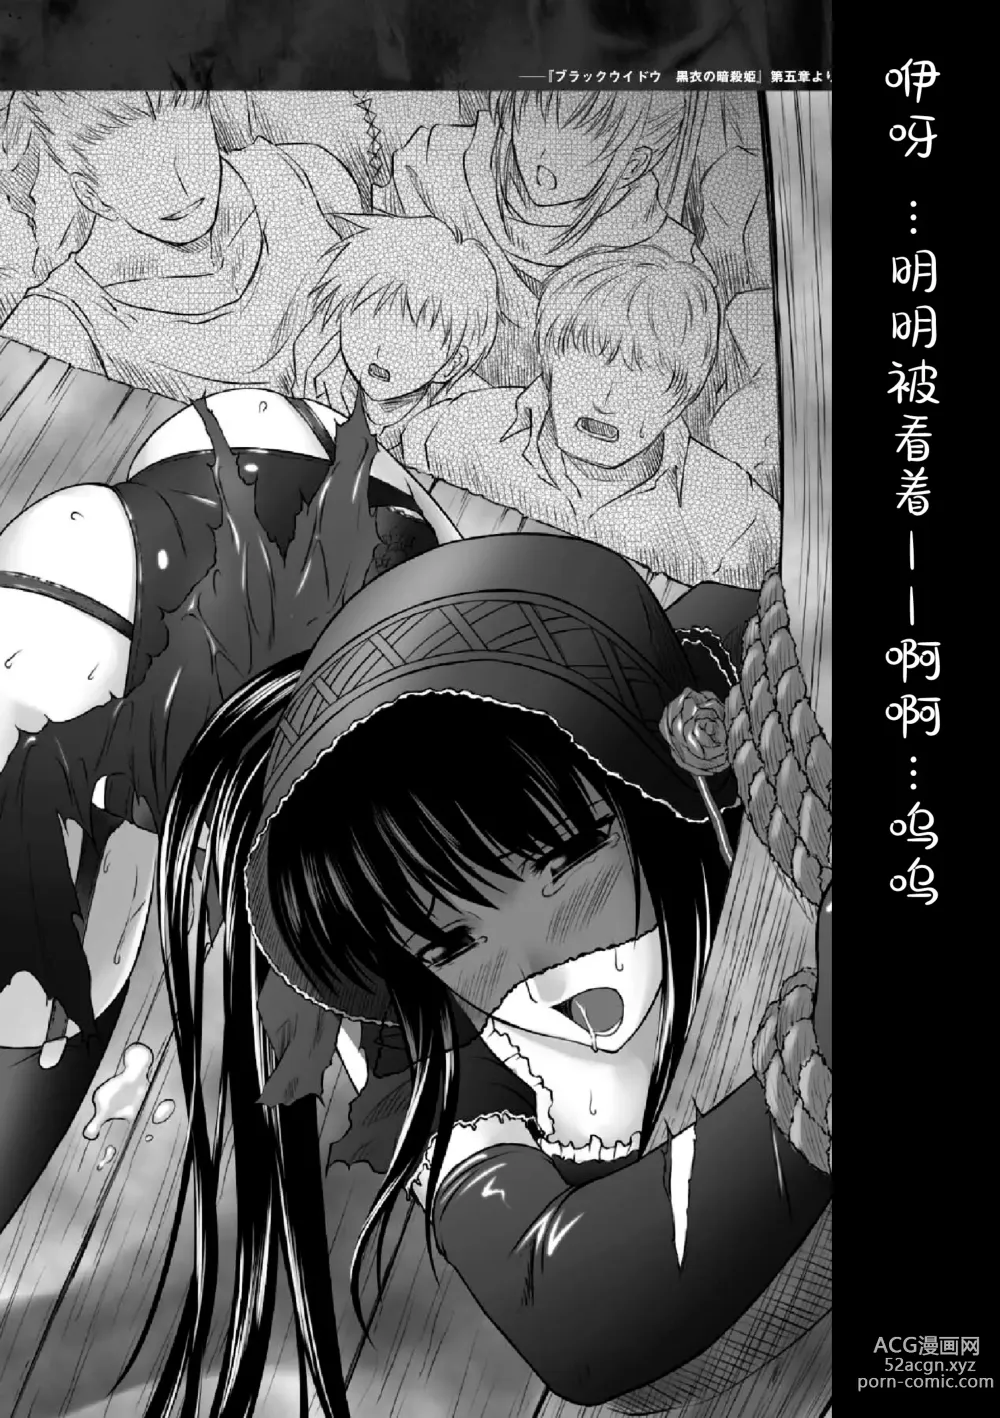 Page 156 of manga Ryoujoku no Rensa